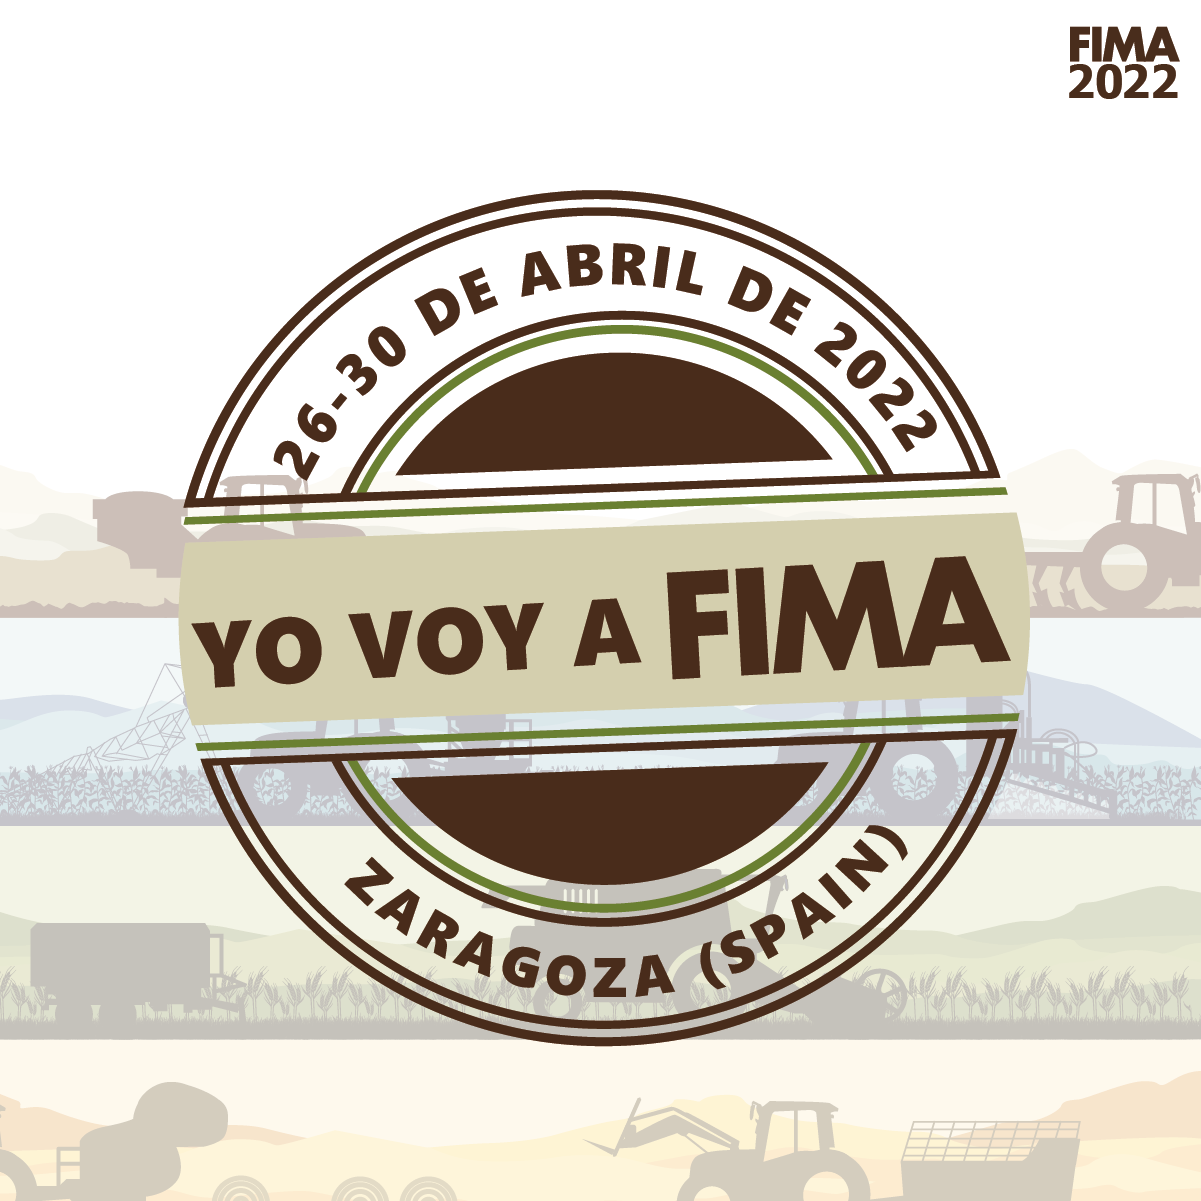 FIMA celebrará su 42 edición en abril de 2022